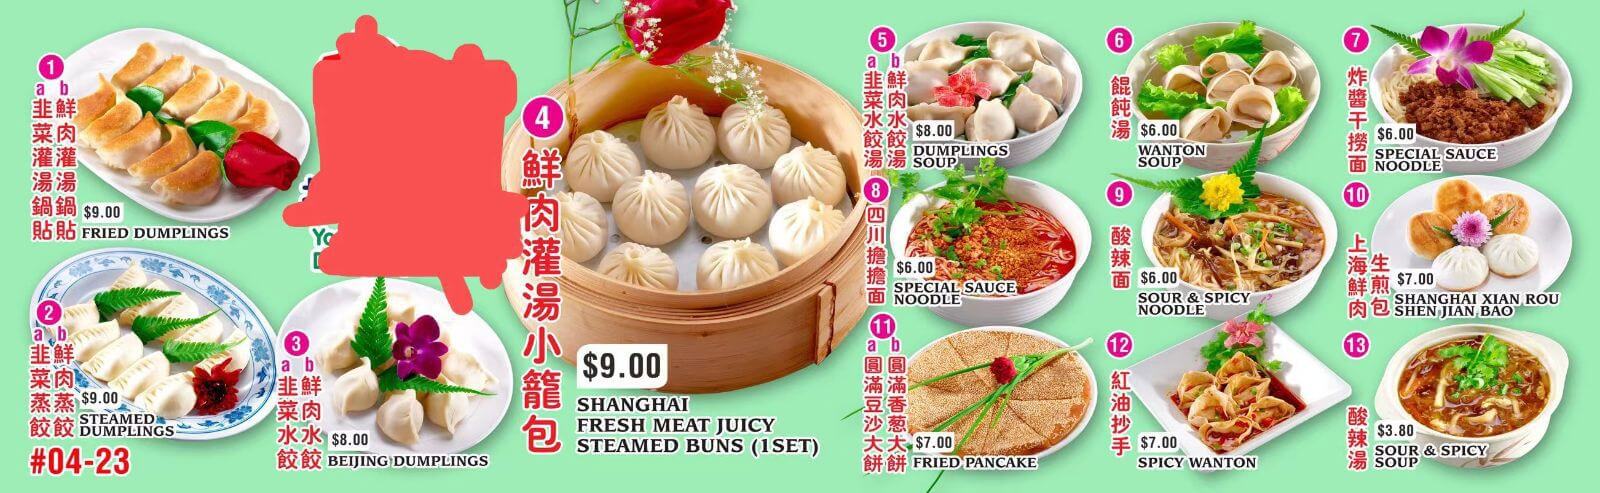 Noodle Dumpling Stall For Sale 小笼包拉面摊位出售